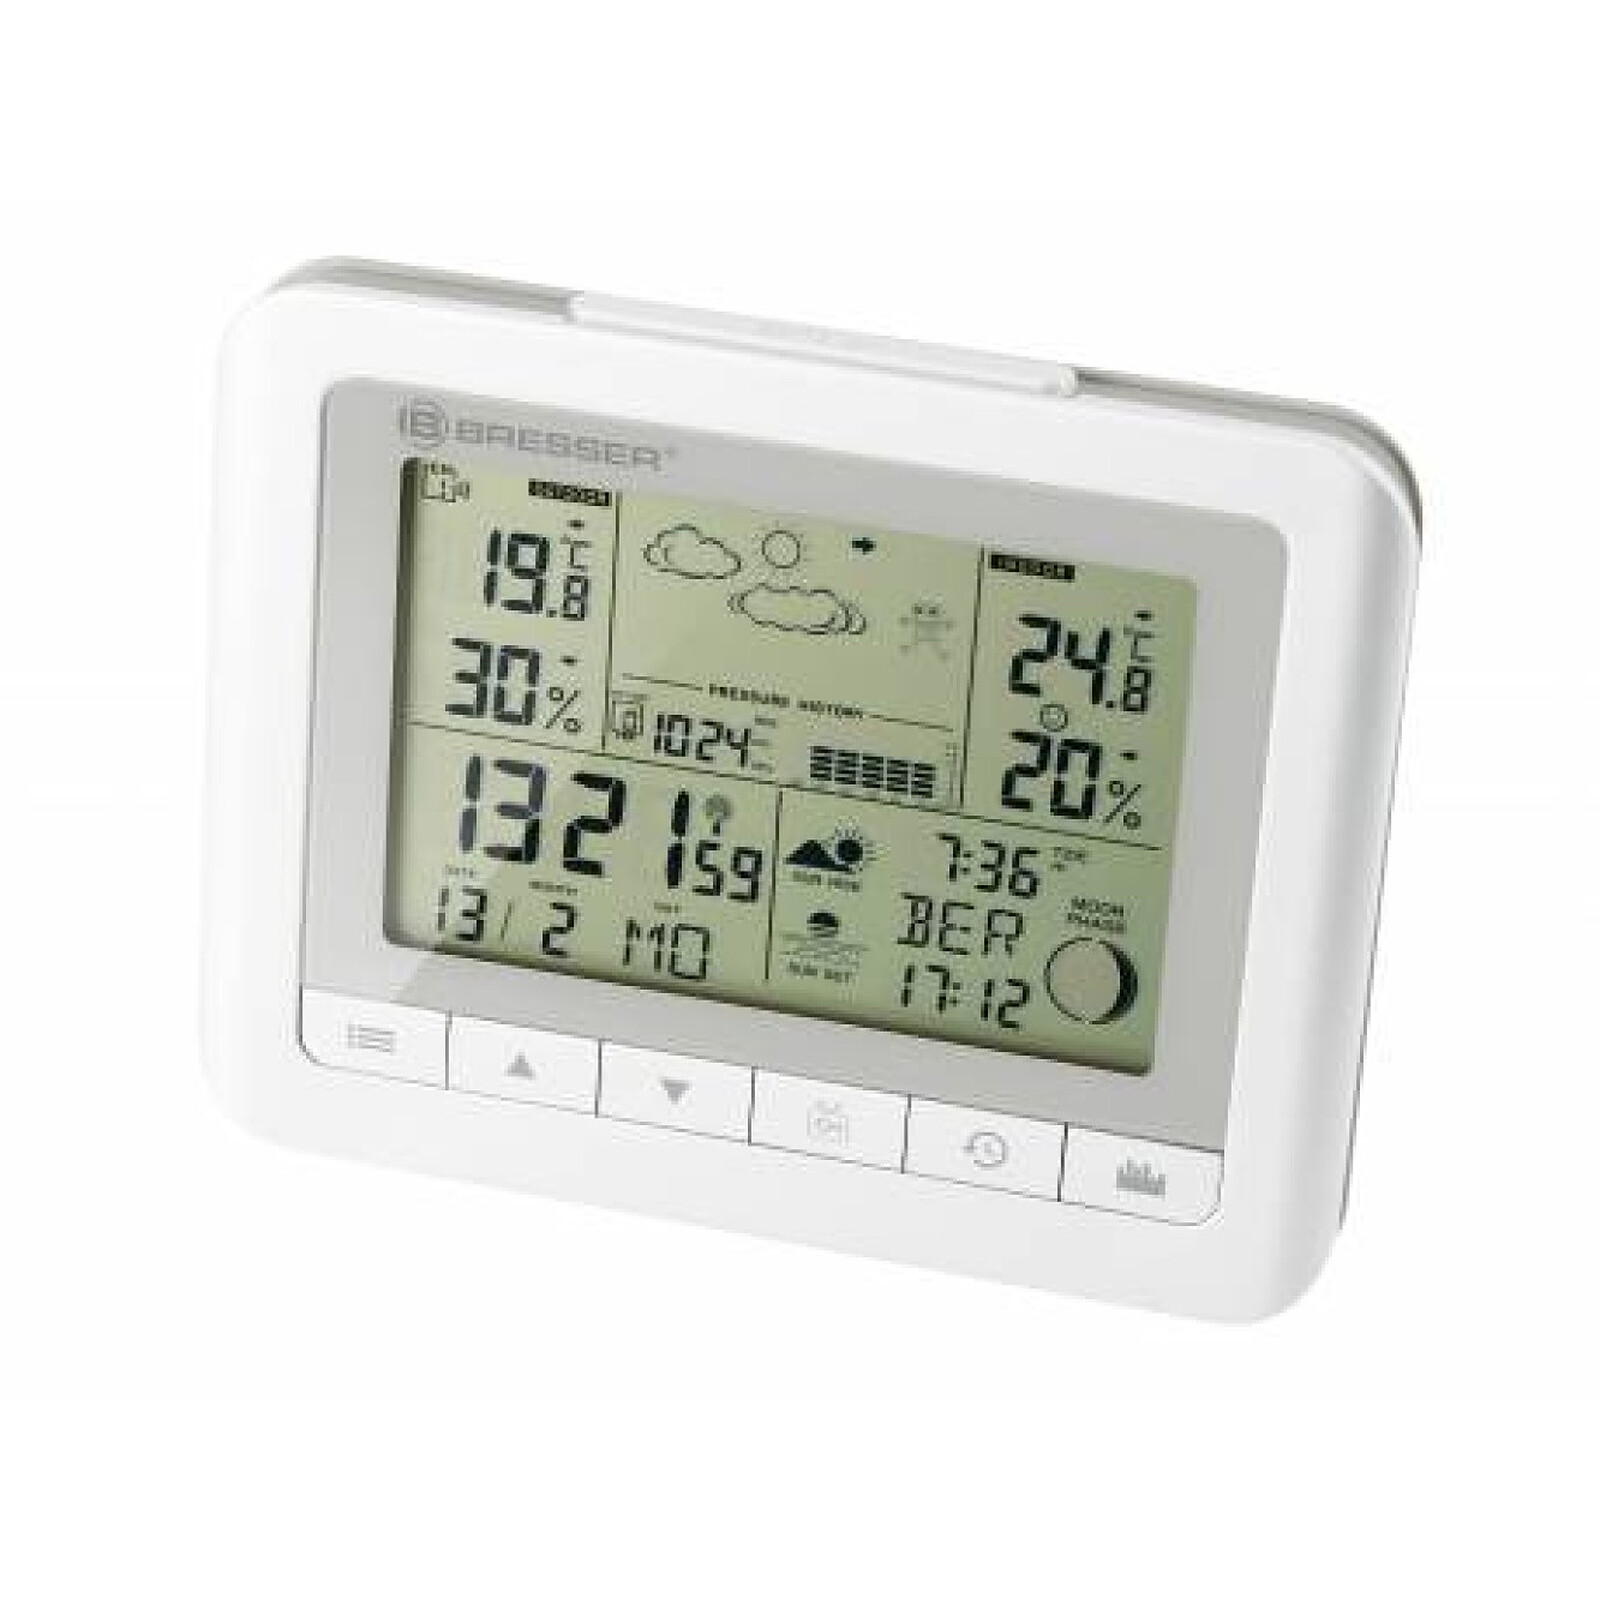 Thermomètre hygromètre digital intérieur noir - Otio - Station Météo - LDLC